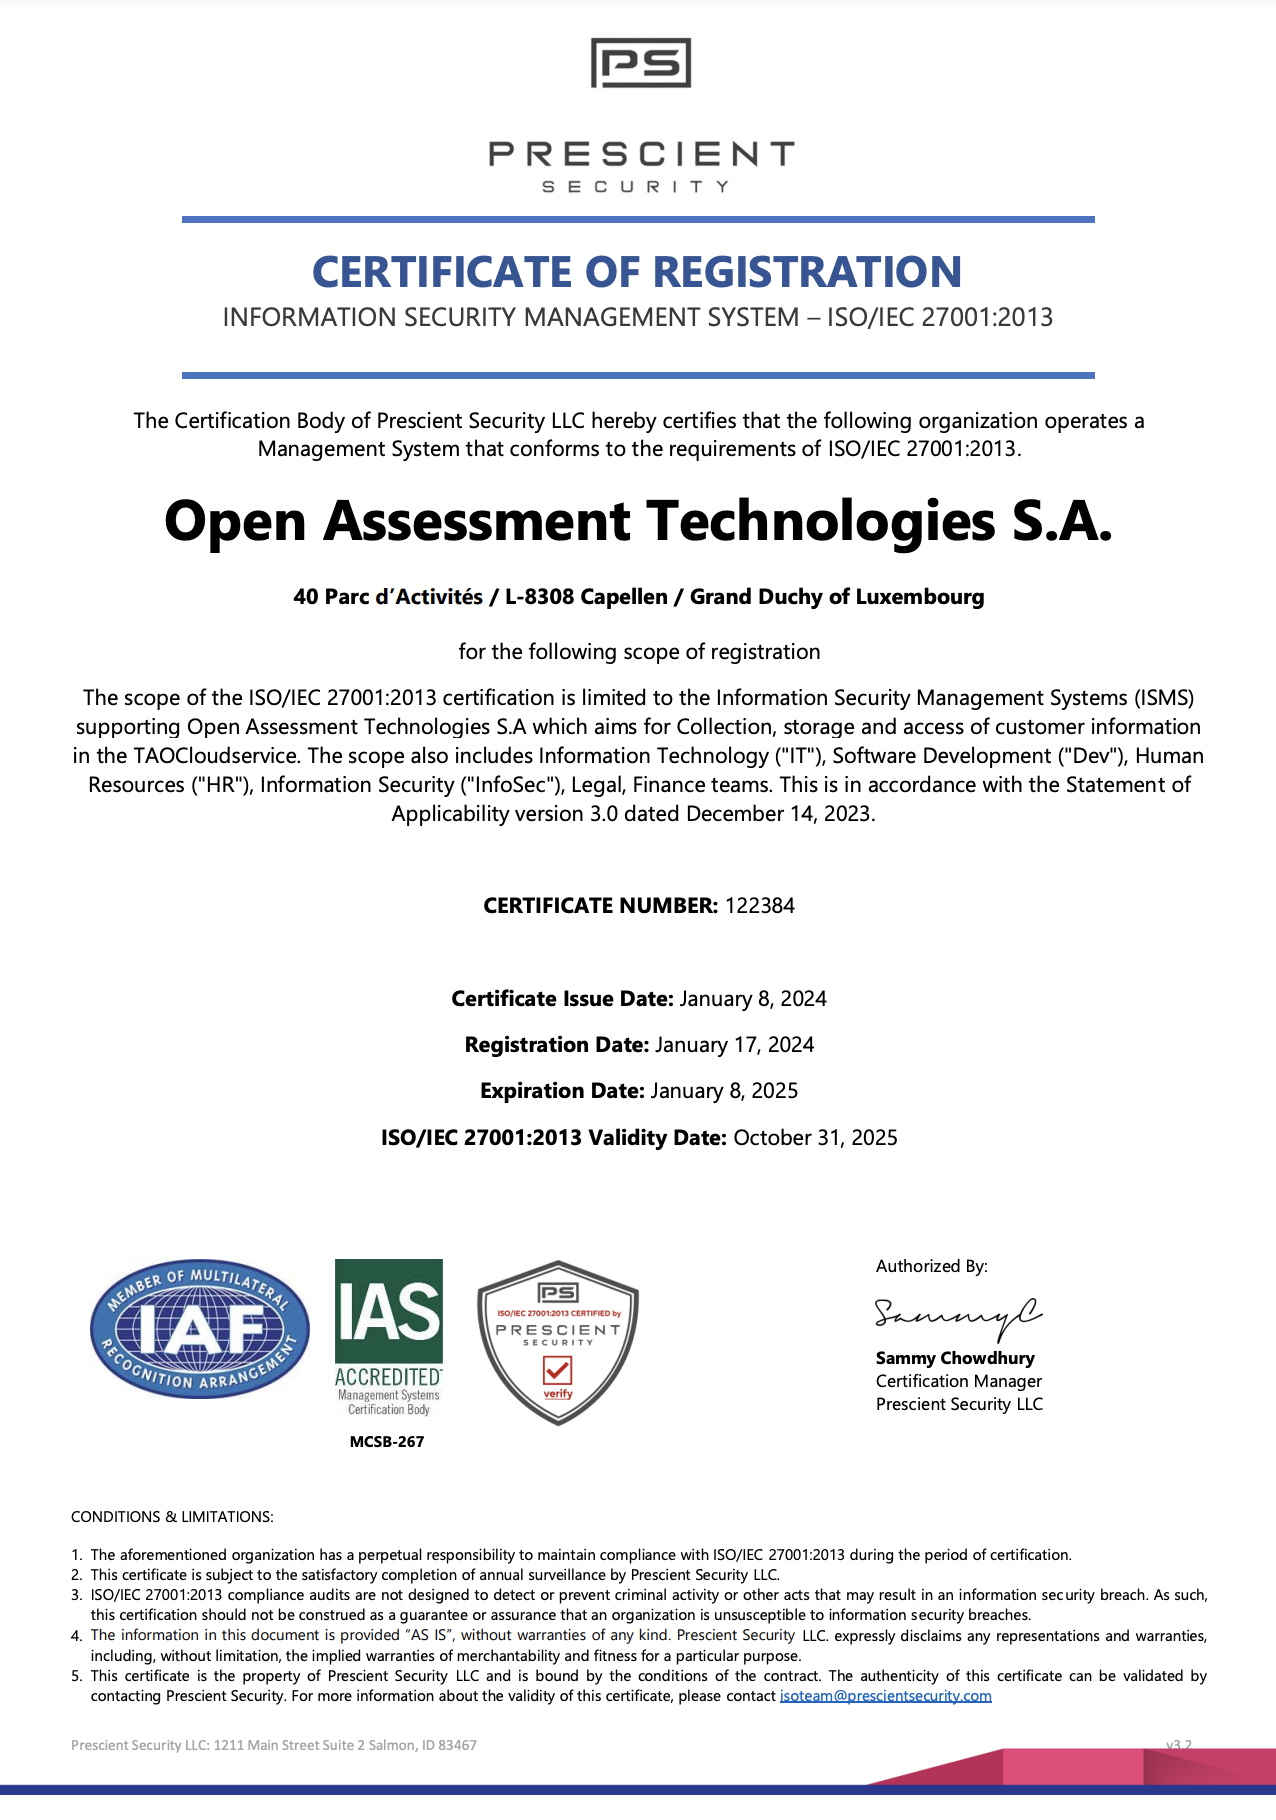 Bild der ISO/IEC 27001-Zertifizierung von OAT von der Zertifizierungsstelle Prescient Security LLC, IAS, IAS akkreditiert.